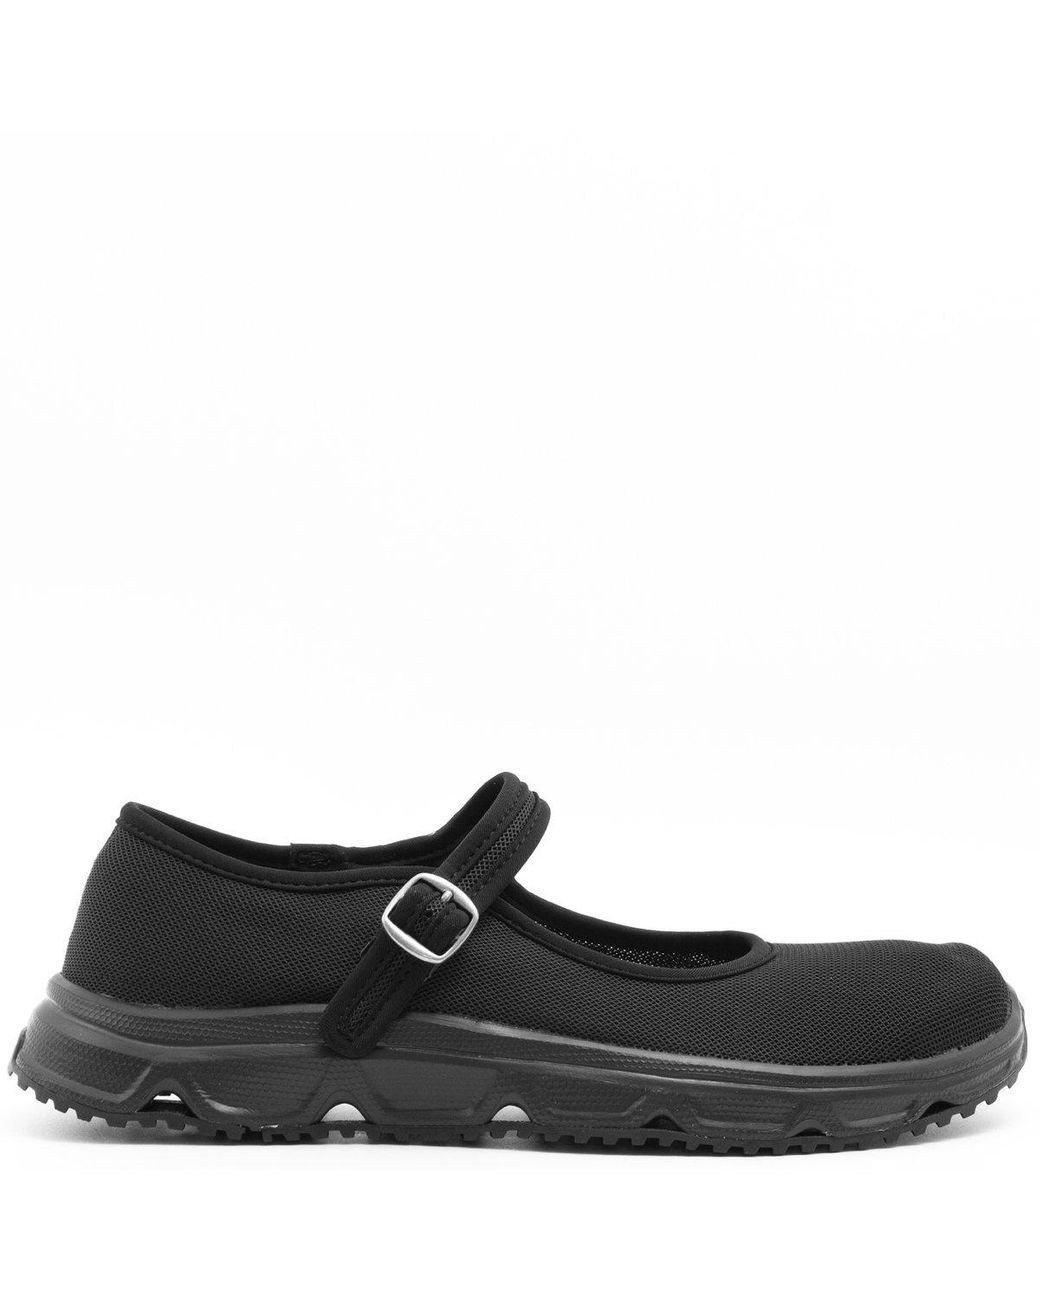 Comme des Garçons X Salomon Mary Jane Rx 3.0 Shoes Black | Lyst Canada